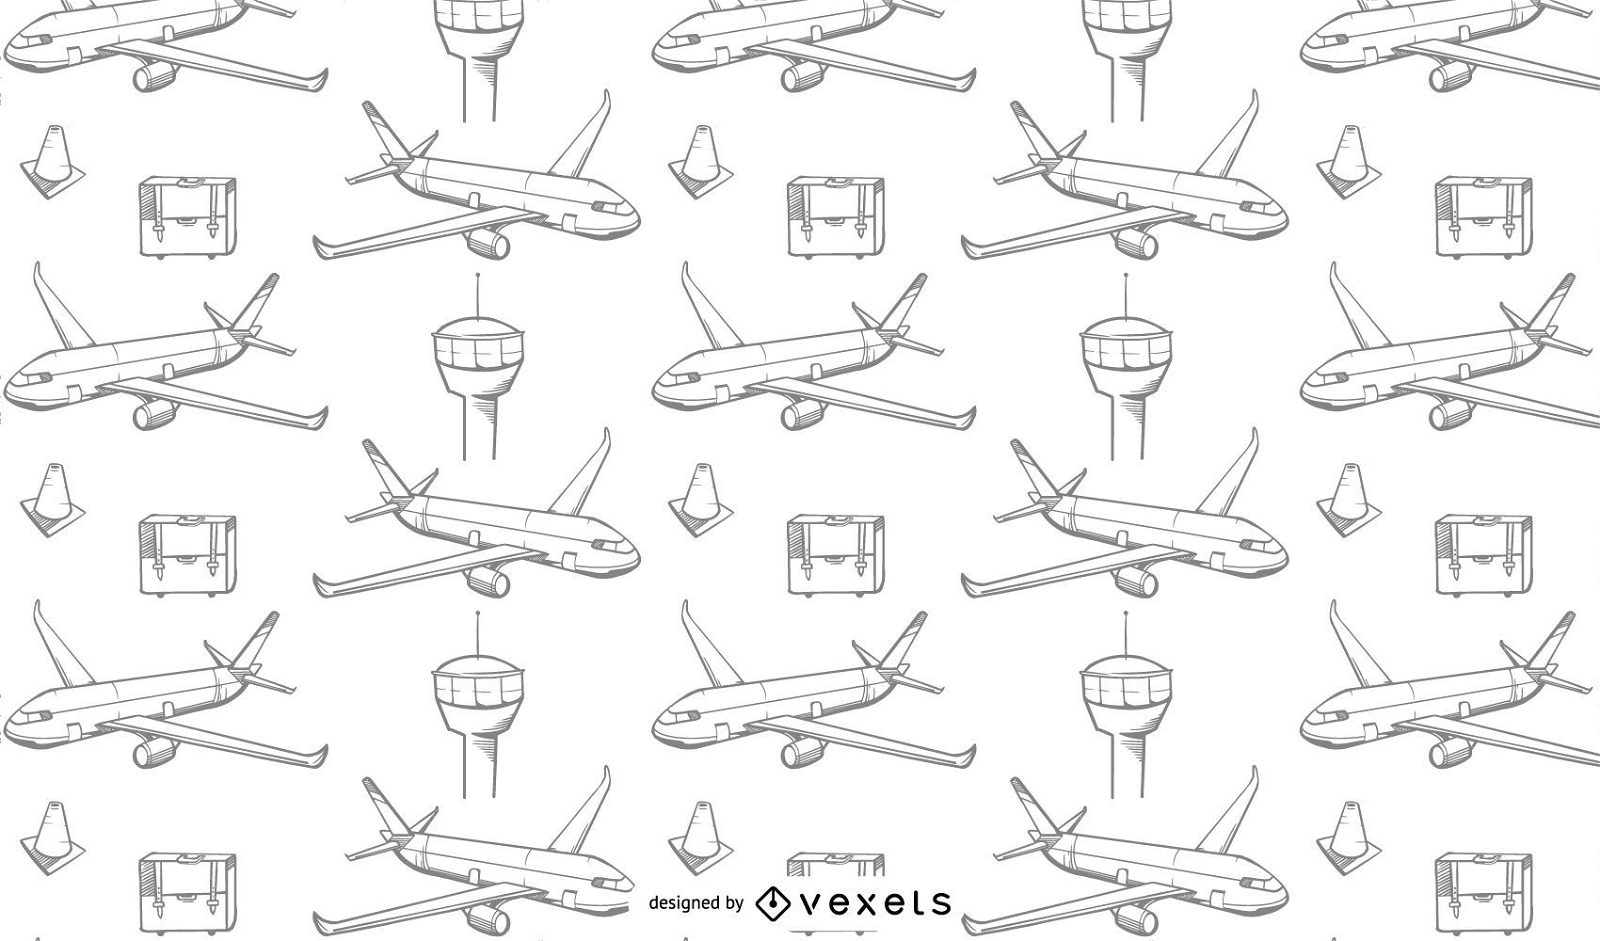 Flugreise-Entwurfsmusterentwurf